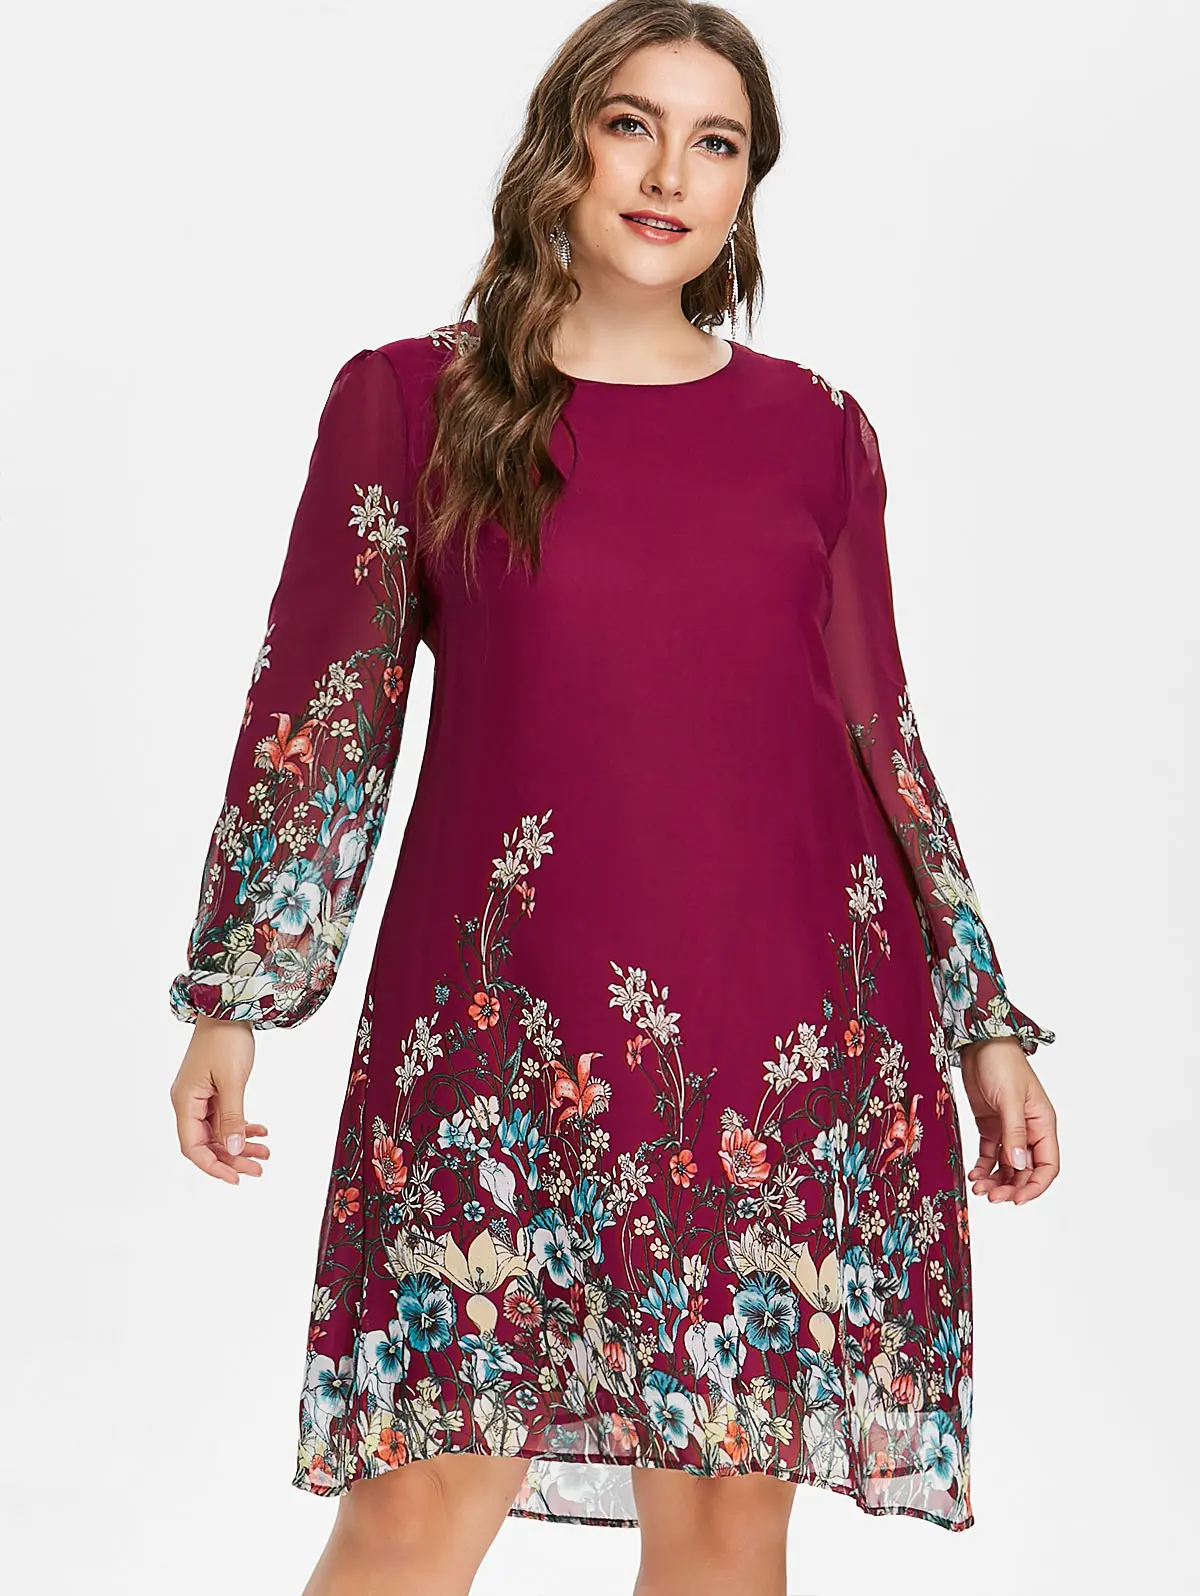 Wipalo Элегантное шифоновое платье с цветочным принтом размера плюс и длинным рукавом 5XL осень